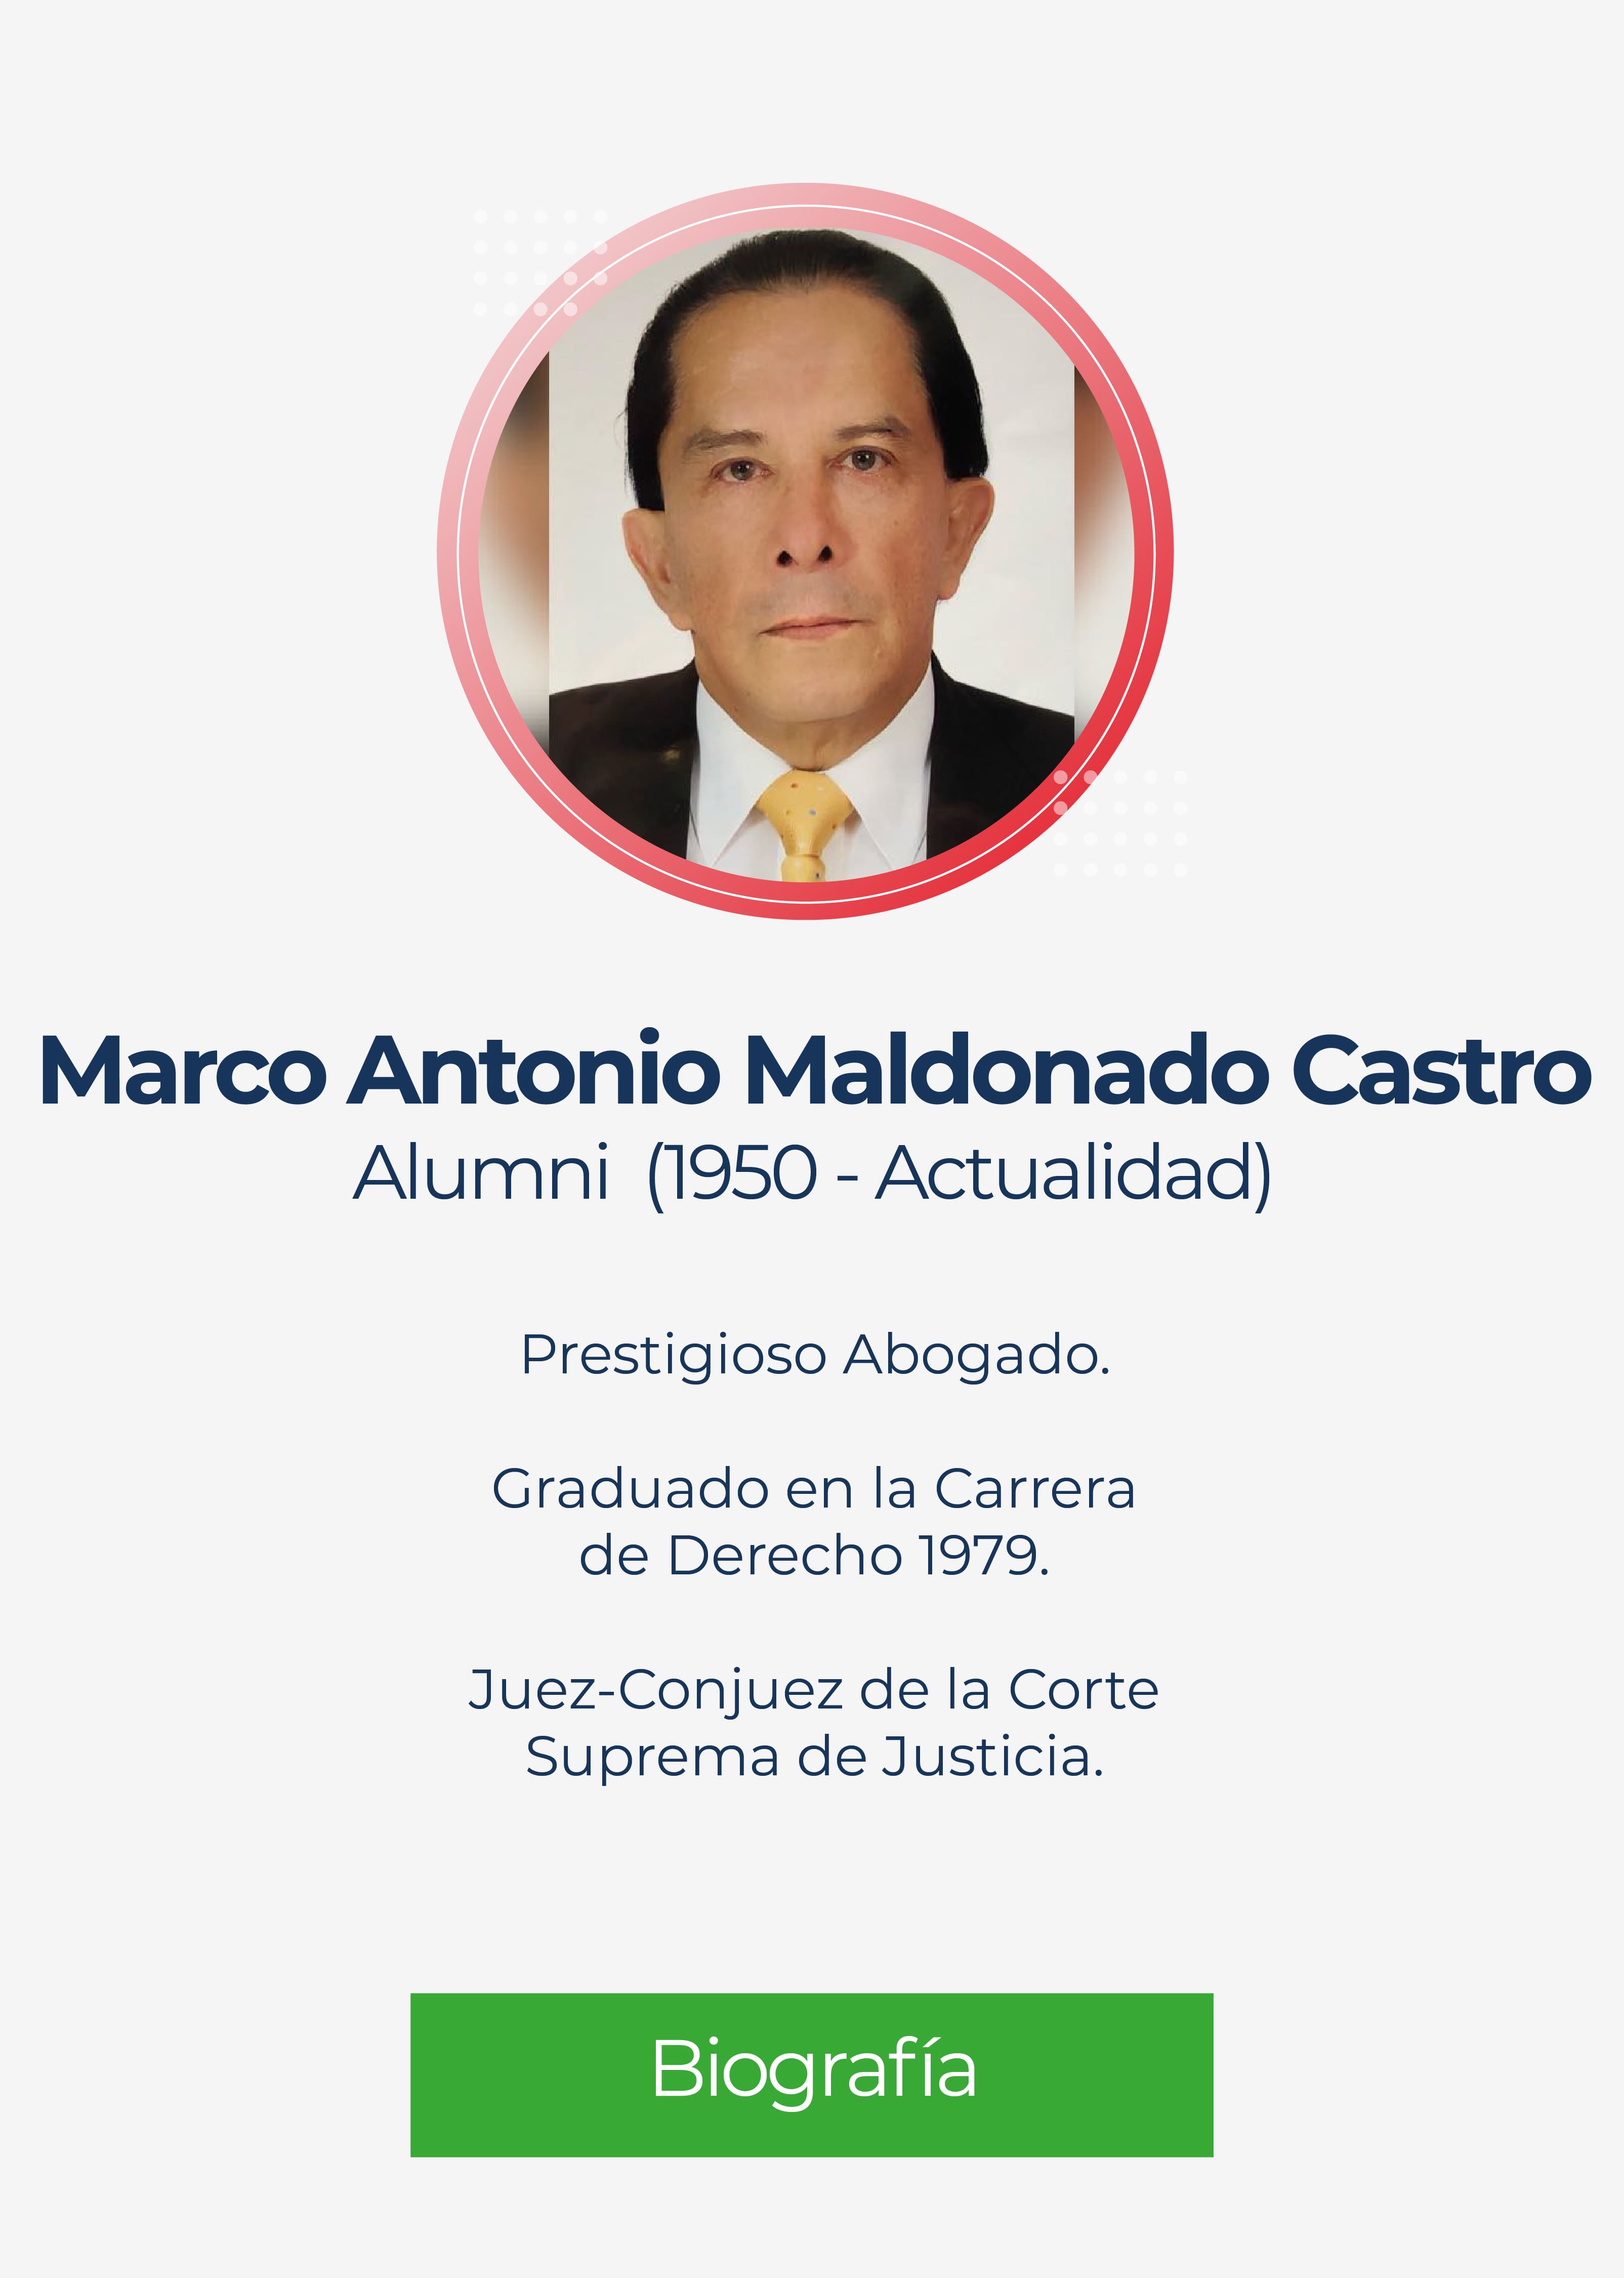 Marco Antonio Maldonado Castro